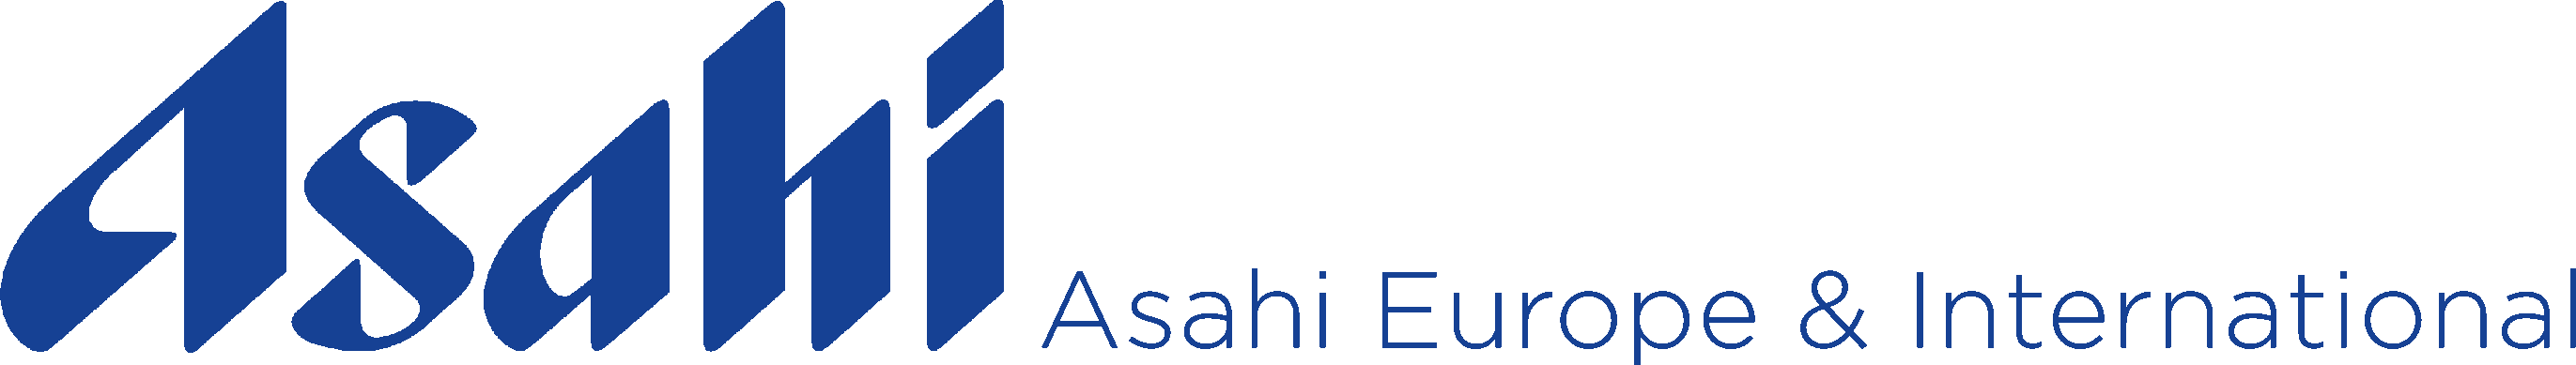 Asahi Breweries Europe Group logo